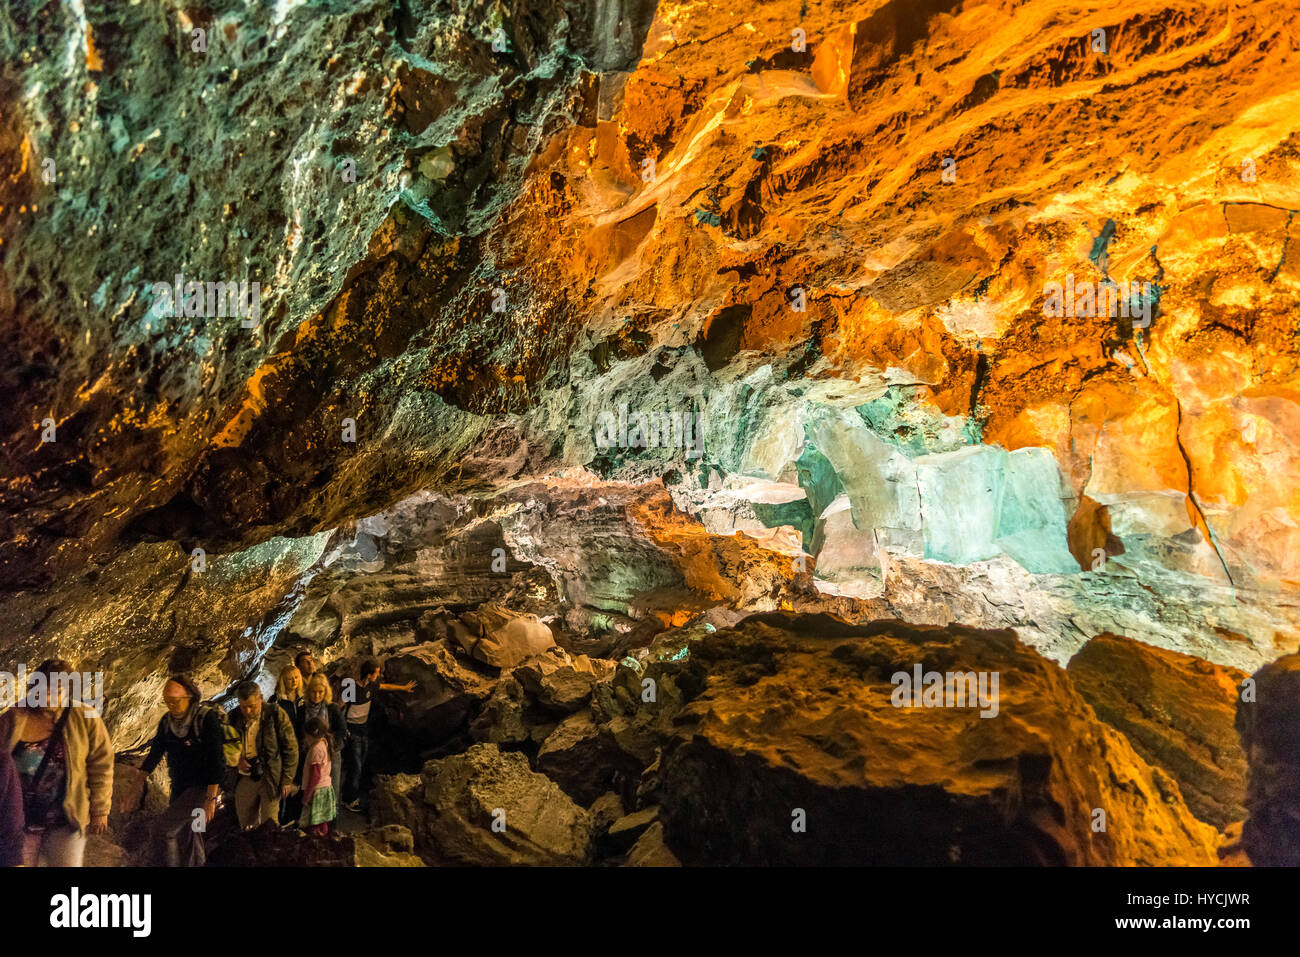 Dans Lavaröhre der Besucher Cueva de los Verdes, Insel Lanzarote, Kanarische Inseln, Spanien | les visiteurs à l'intérieur de la grotte de lave Cueva de los Verdes, Lanza Banque D'Images